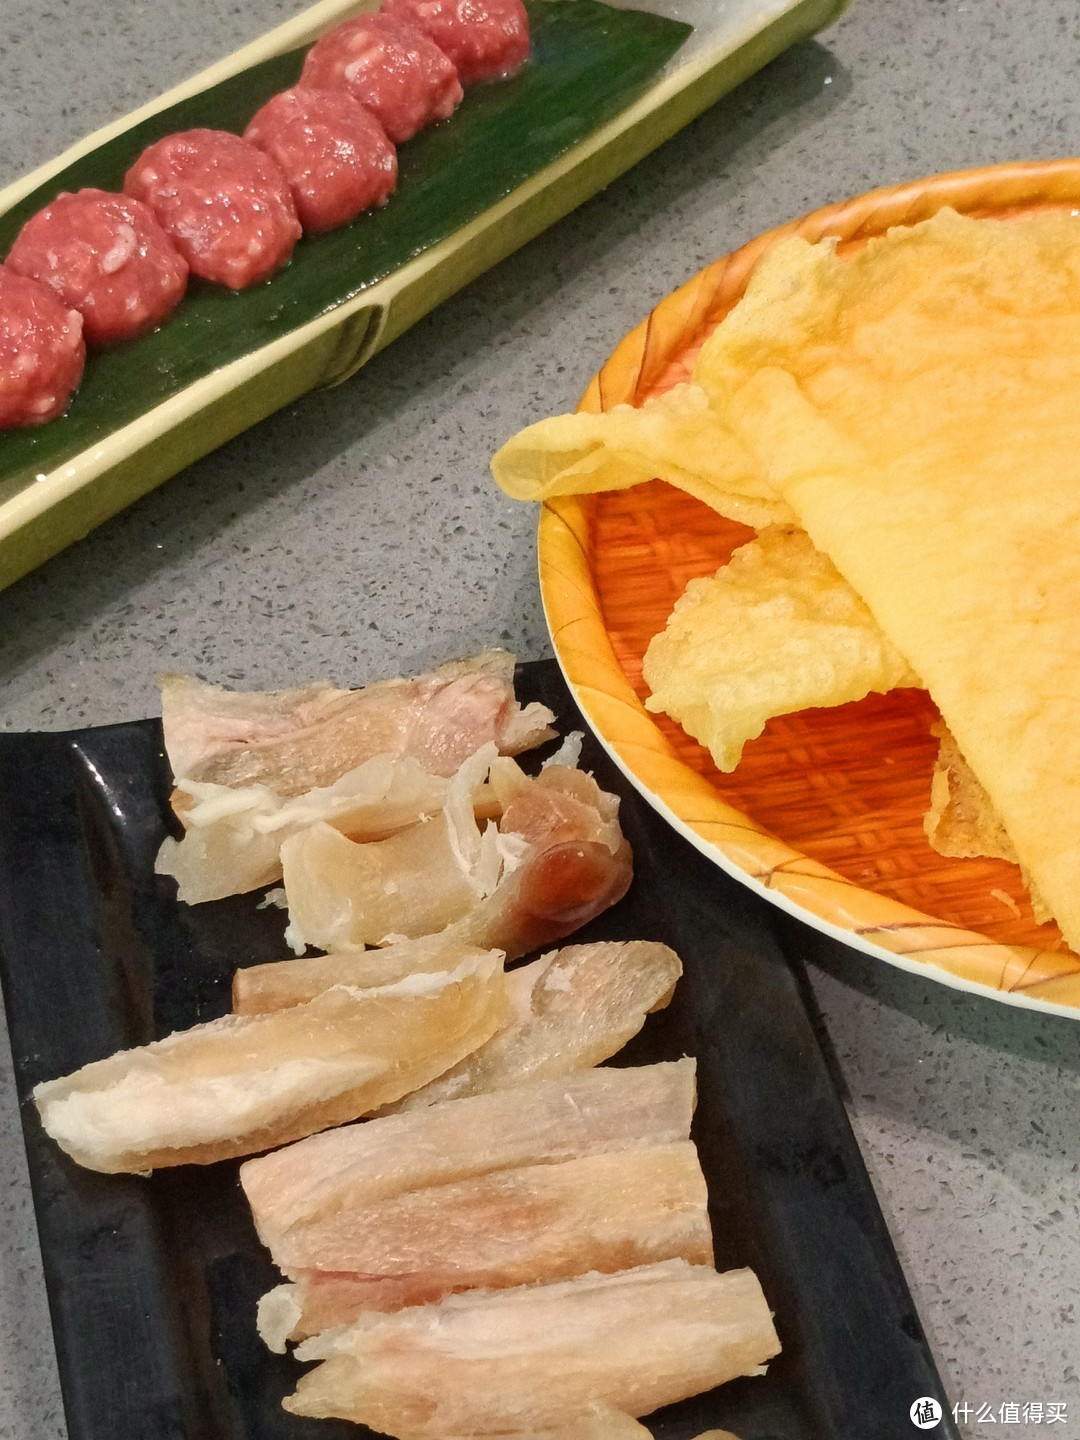 来潮汕的第一件事就是吃牛肉火锅